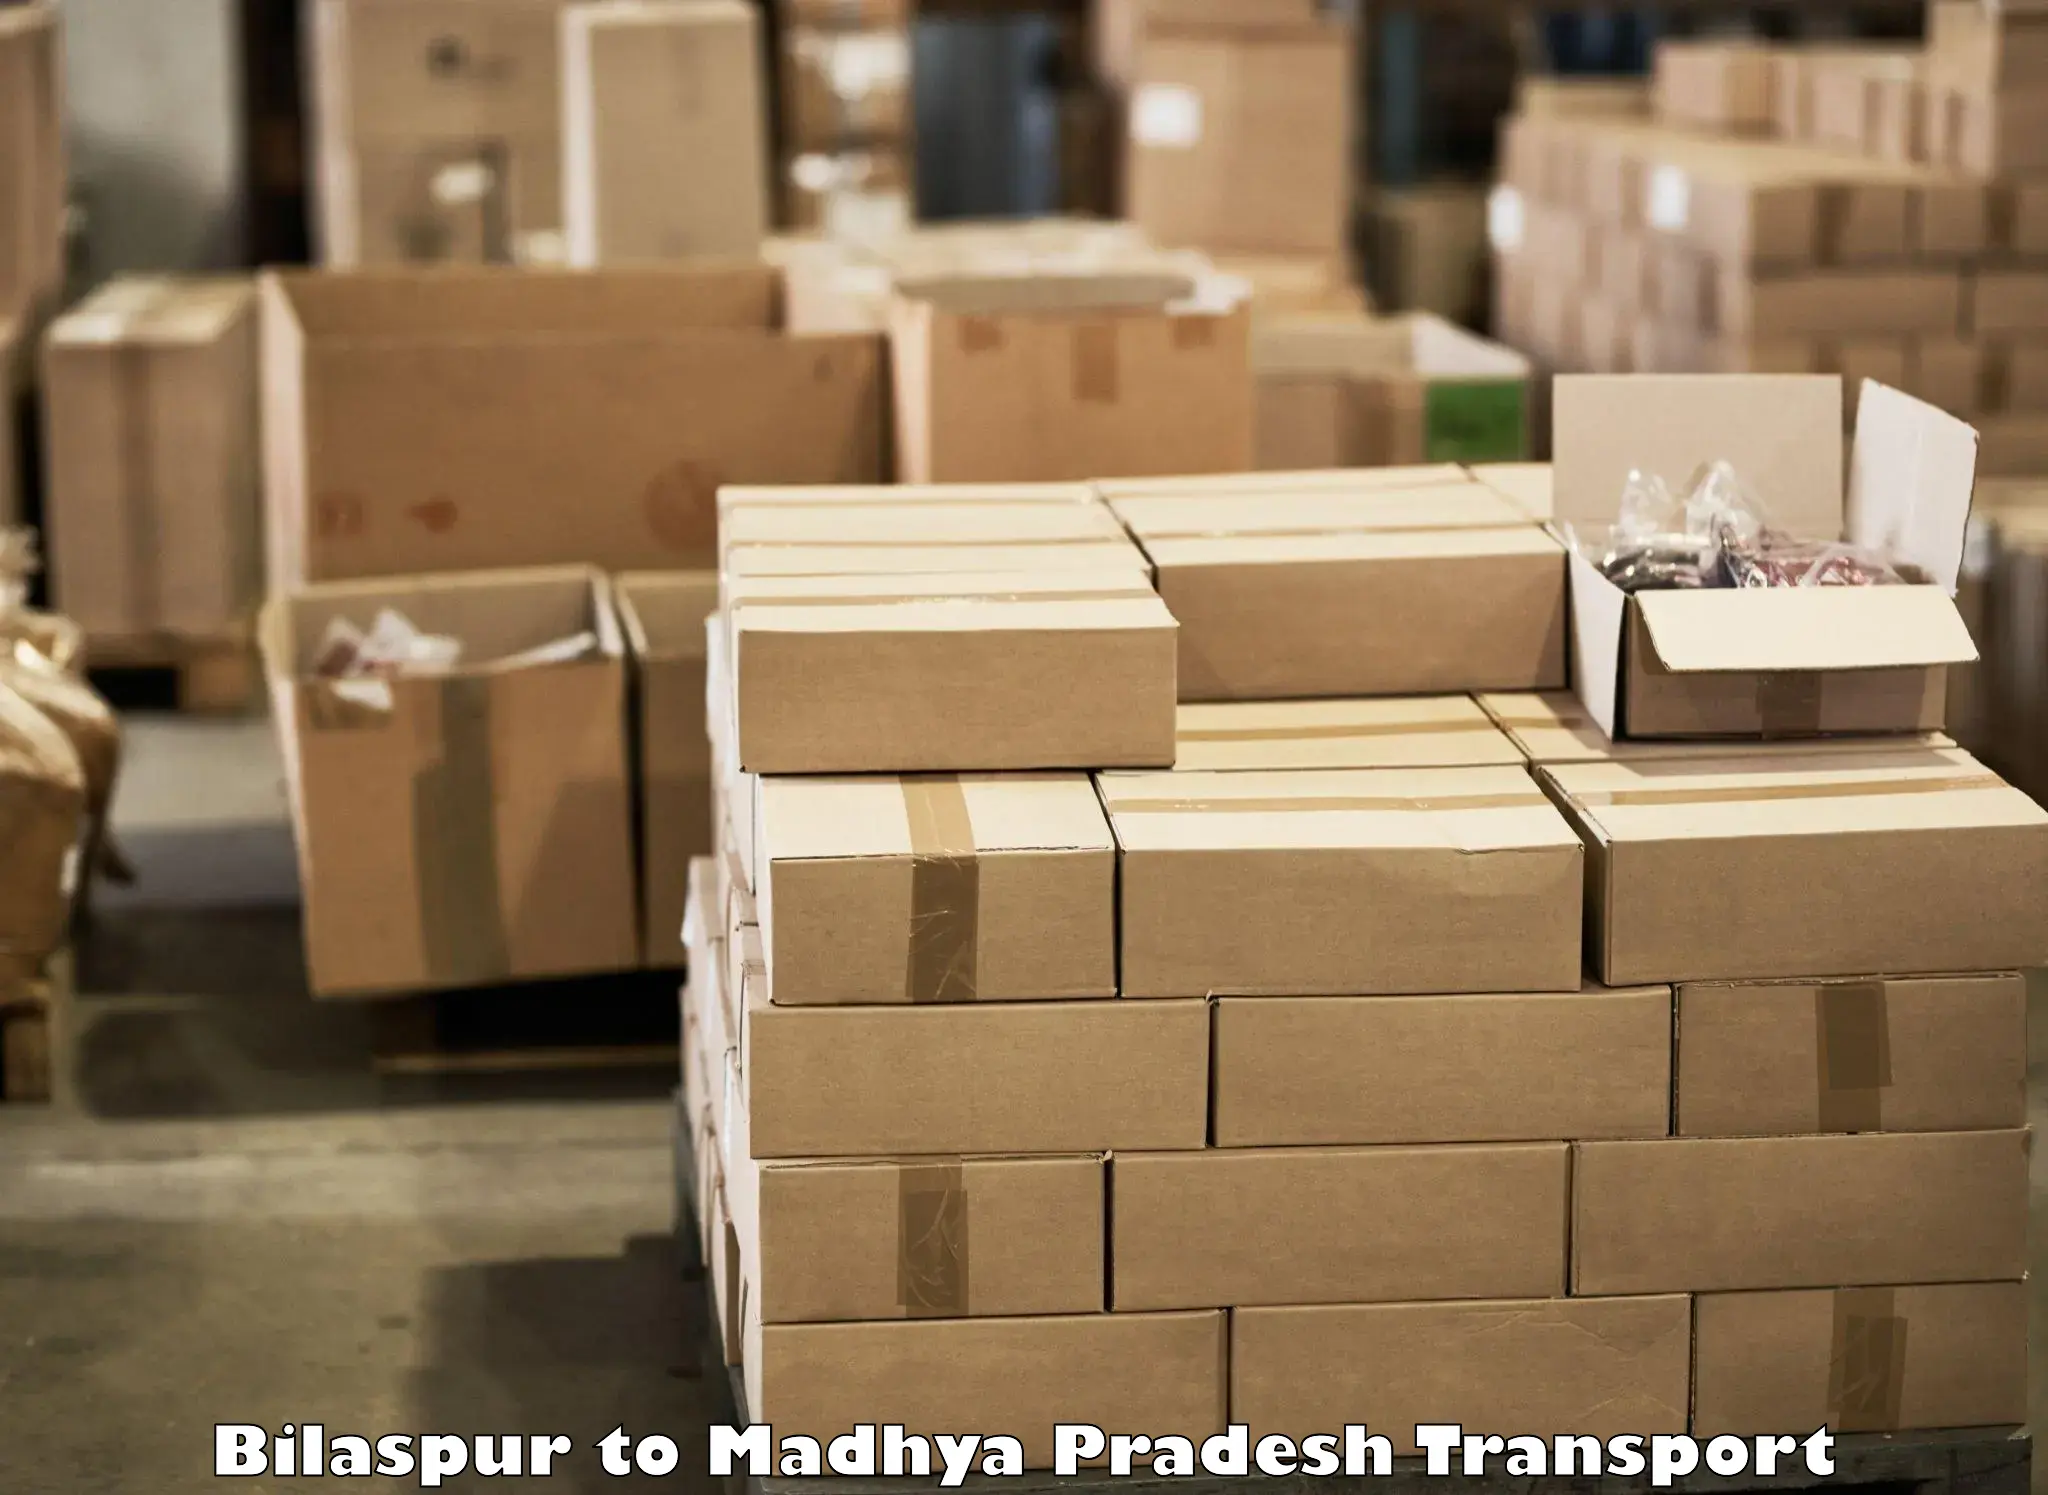 Parcel transport services Bilaspur to Nagda